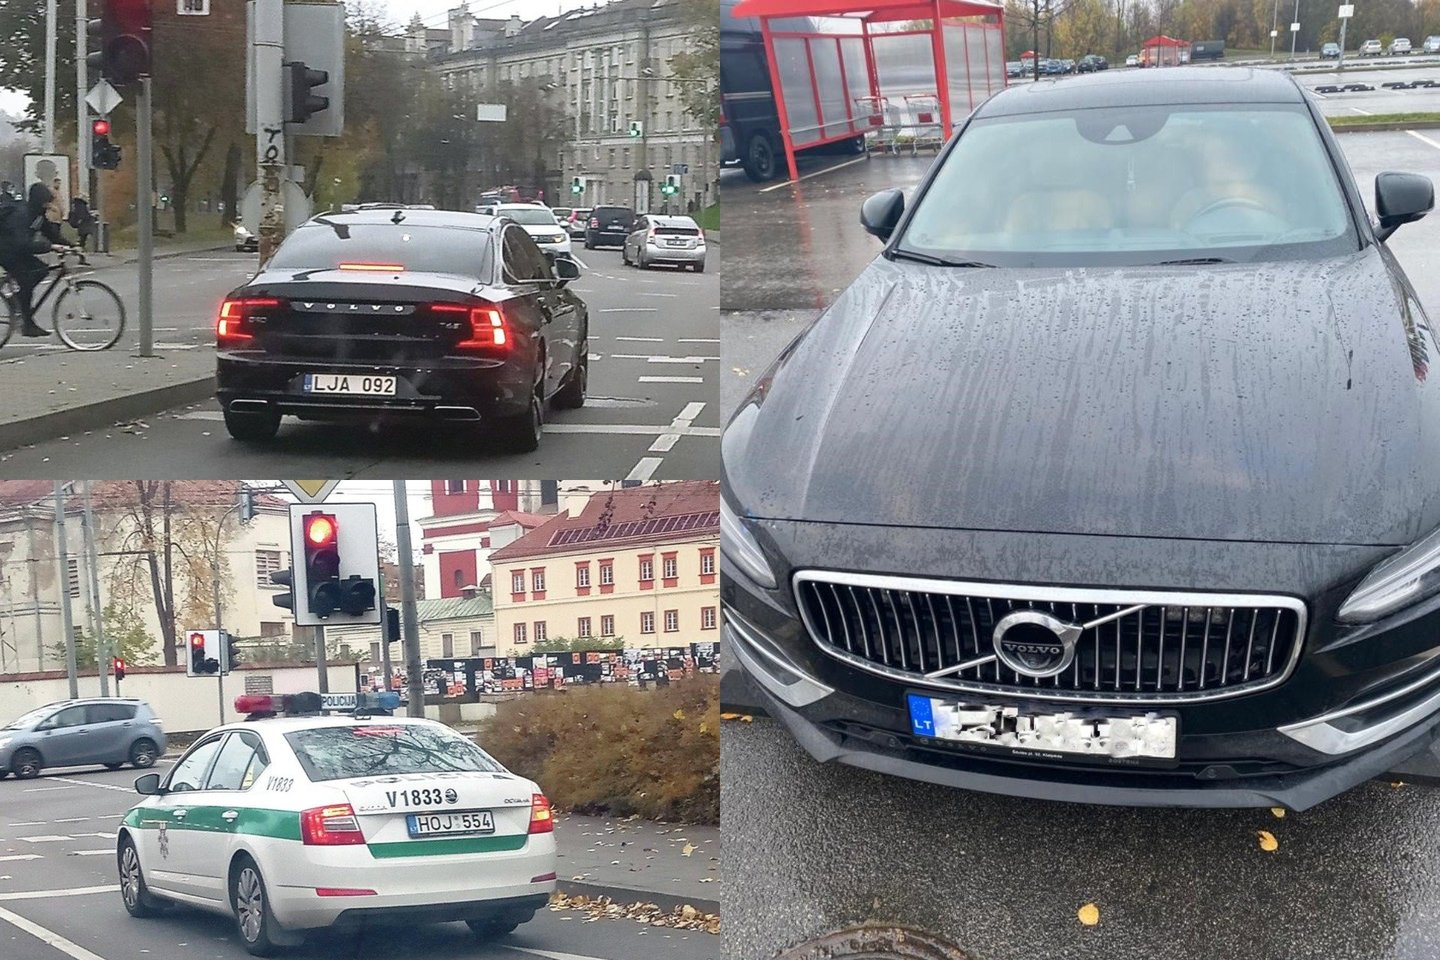 Kelių policijos valdyboje pradėta administracinė teisėna dėl policininkų, kurie prie „Volvo“ automobilio pažeidusio taisykles stabtelėjo tik trumpam.<br>lrytas.lt fotomontažas